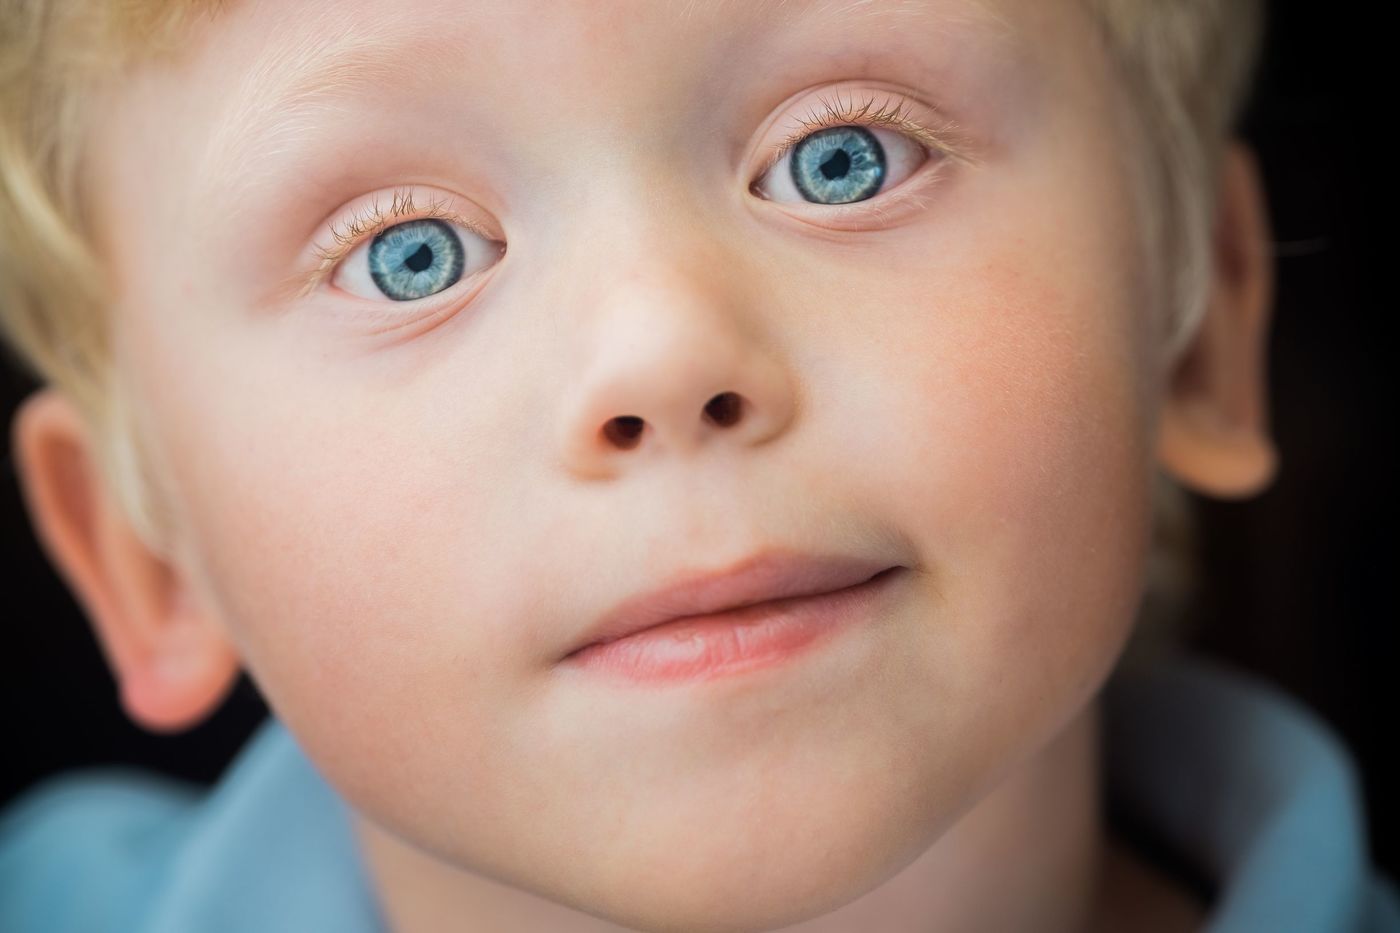 Разные глазки. Гетерохромия радужной оболочки. Детские глаза. Дети с голубыми глазами. Дети с разным цветом глаз.